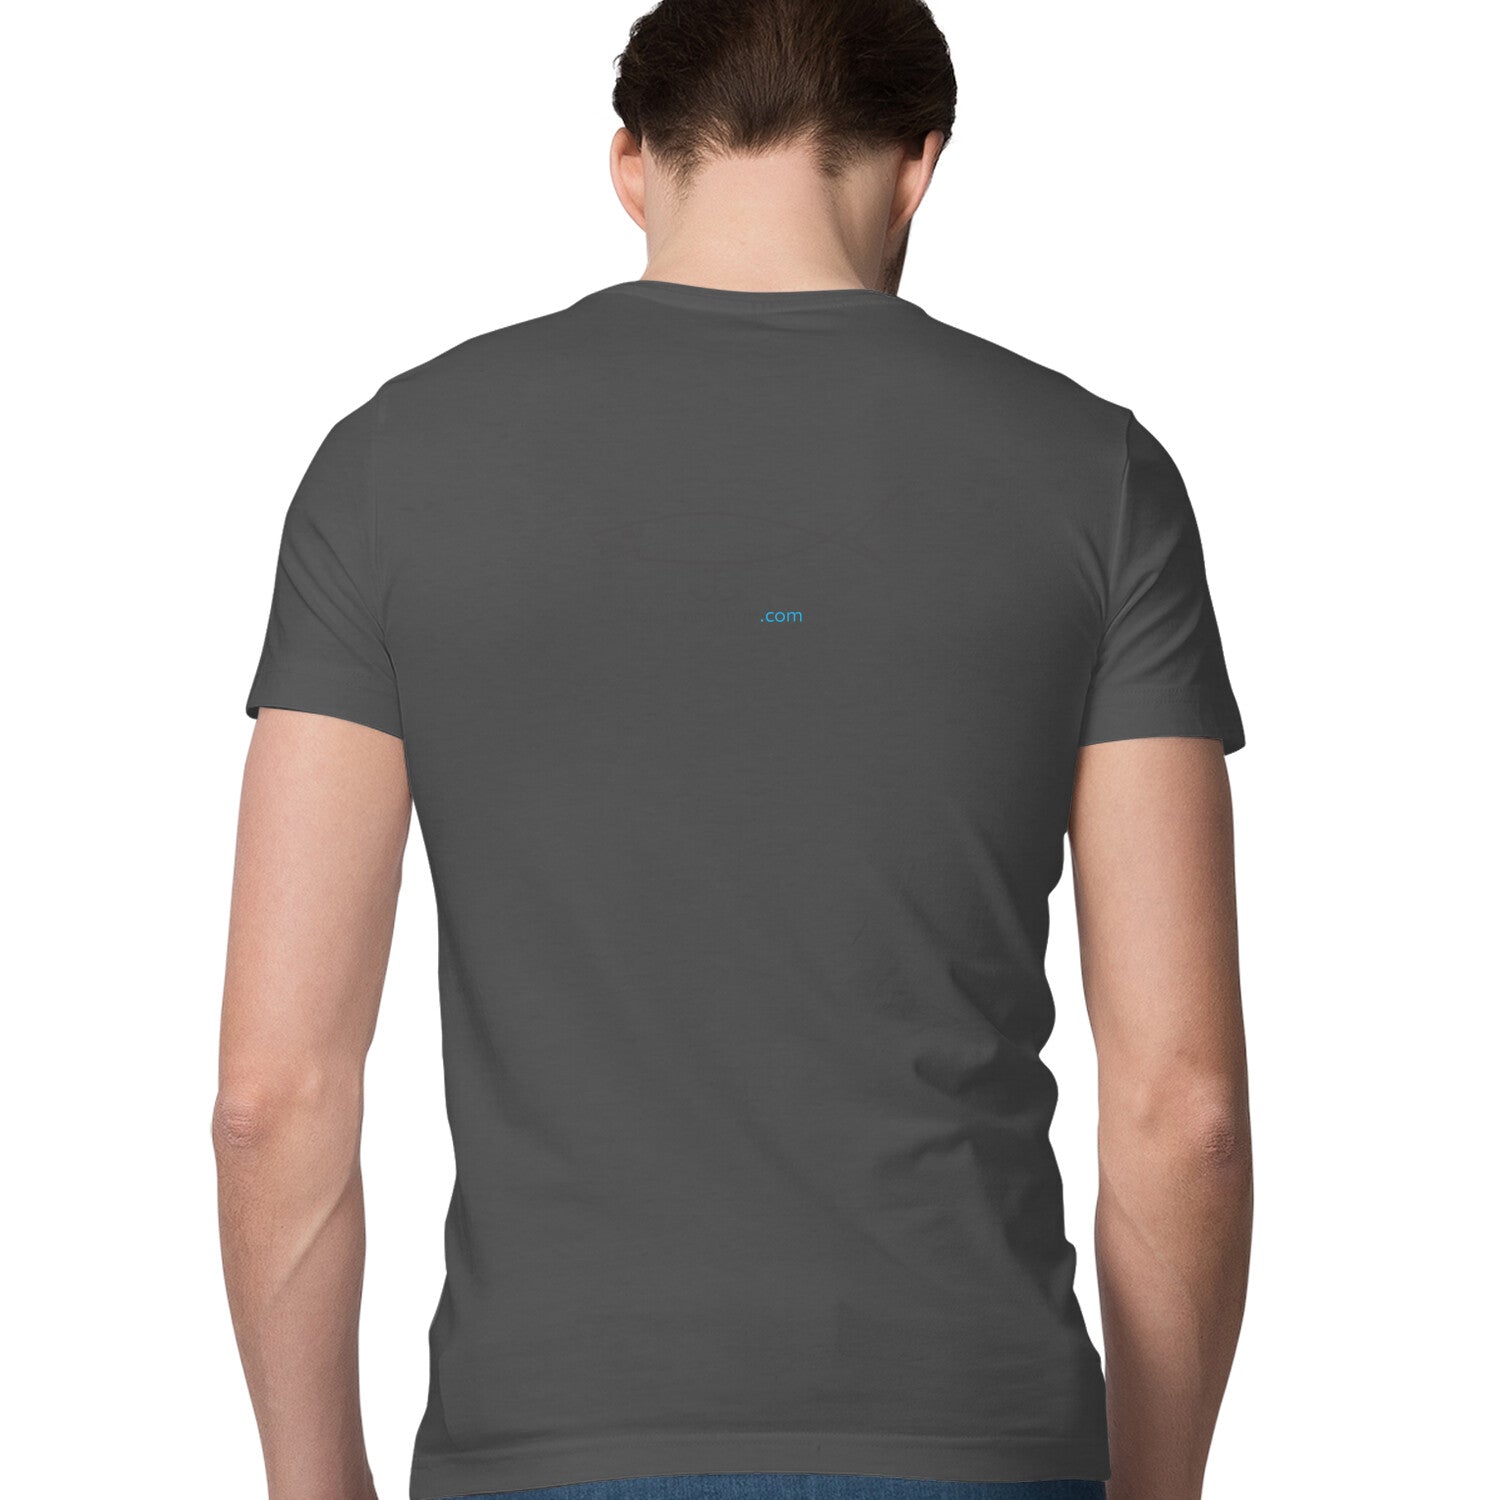 पुरुषों की एंग्लिंग टी-शर्ट |सामने - गहरा डाइविंग फायर टाइगर ल्योर | बैक - फिशर्मन्सहब.कॉम लोगो | राउंड गला | छोटी बाजू |